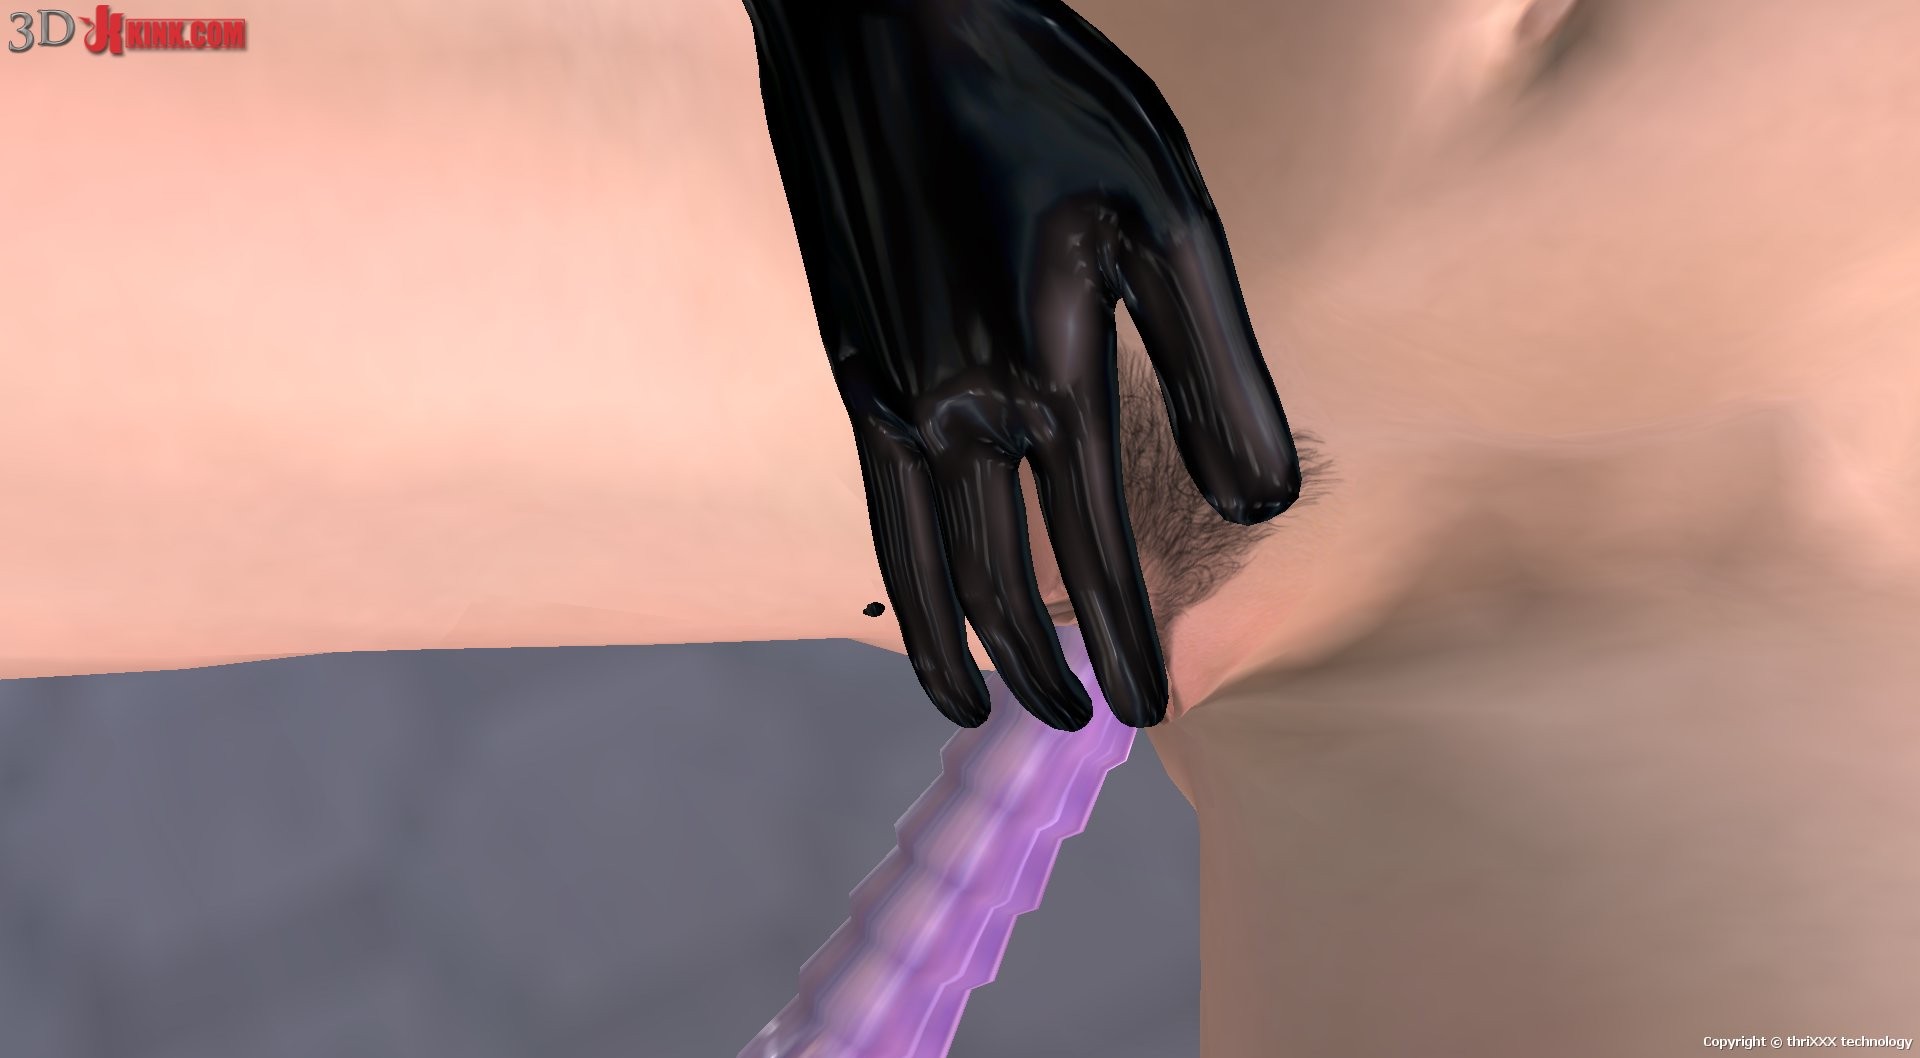 Une action sexuelle bdsm chaude créée dans un jeu de sexe virtuel fétichiste en 3D !
 #69358804